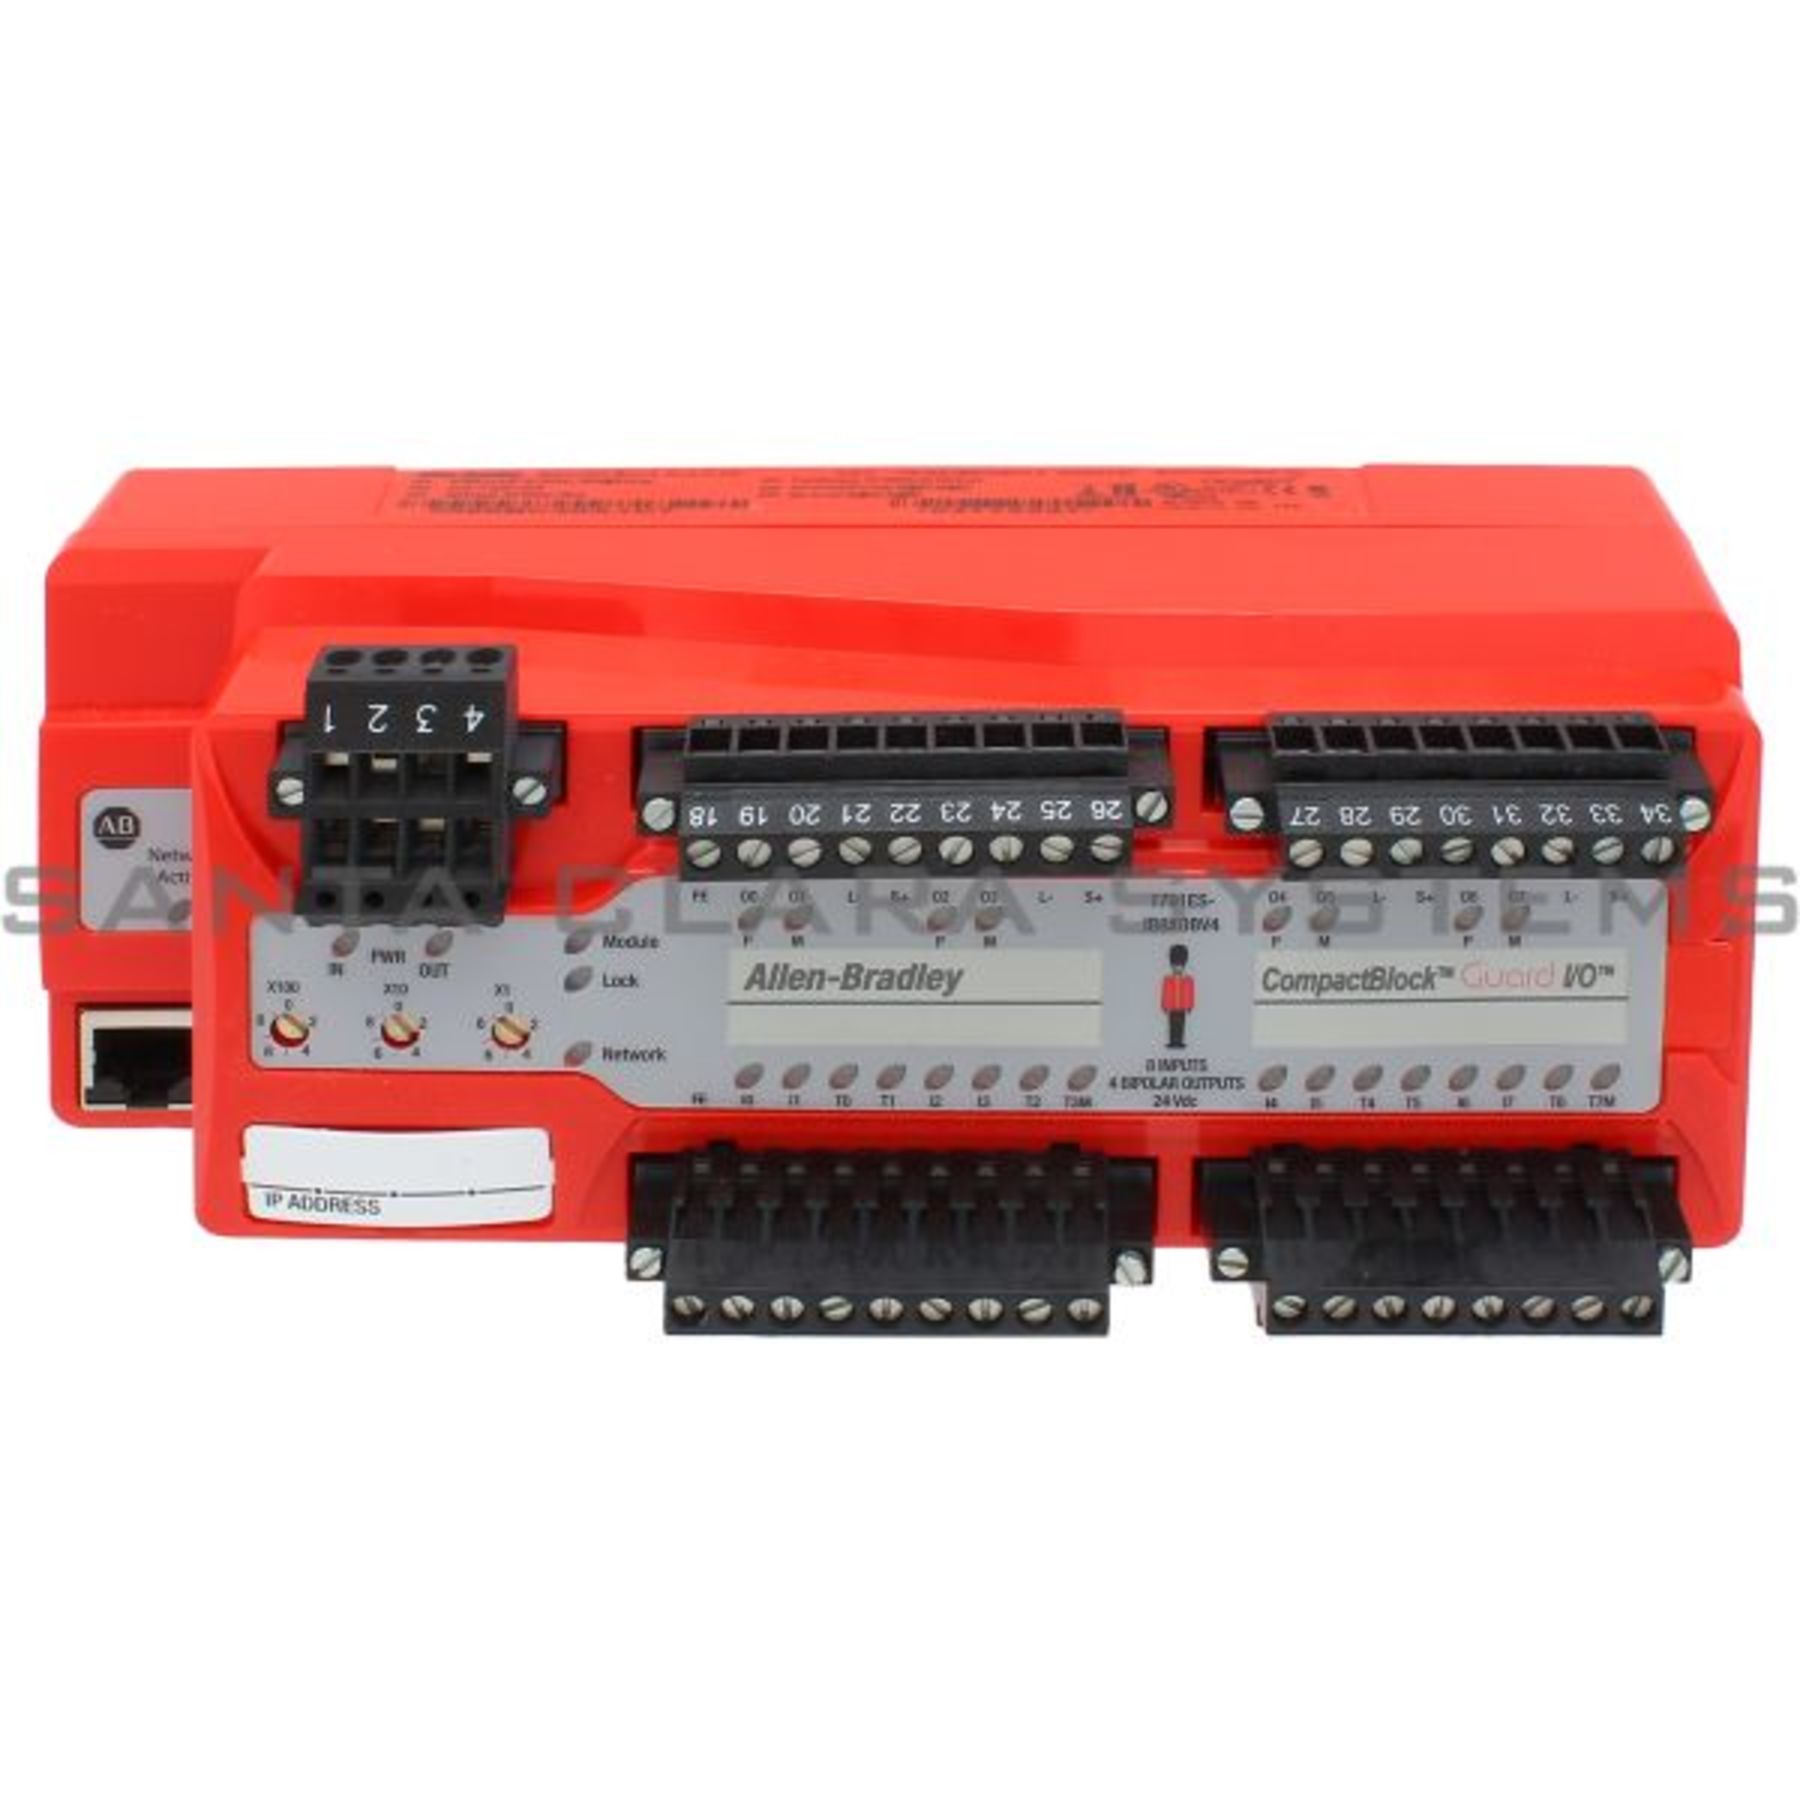 1791ES-IB8XOBV4 Allen Bradley Ethernet/IP Safety Compactblock 